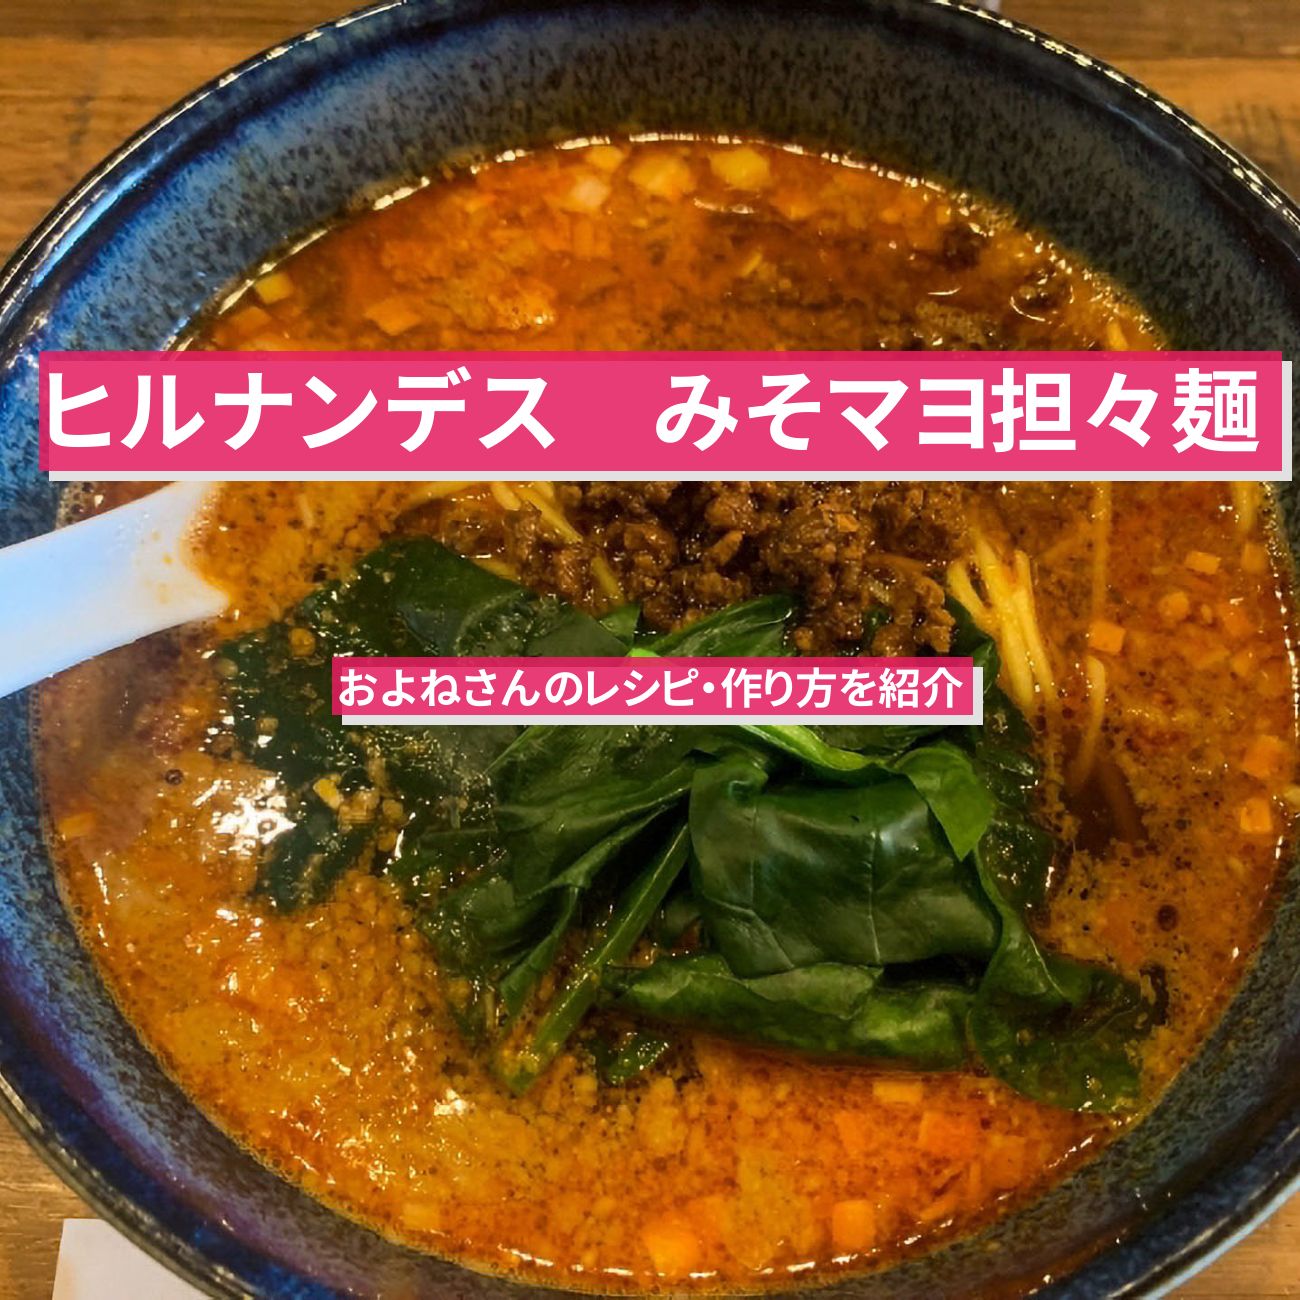 【ヒルナンデス】『みそマヨ担々麺』およねさんのレシピ・作り方を紹介